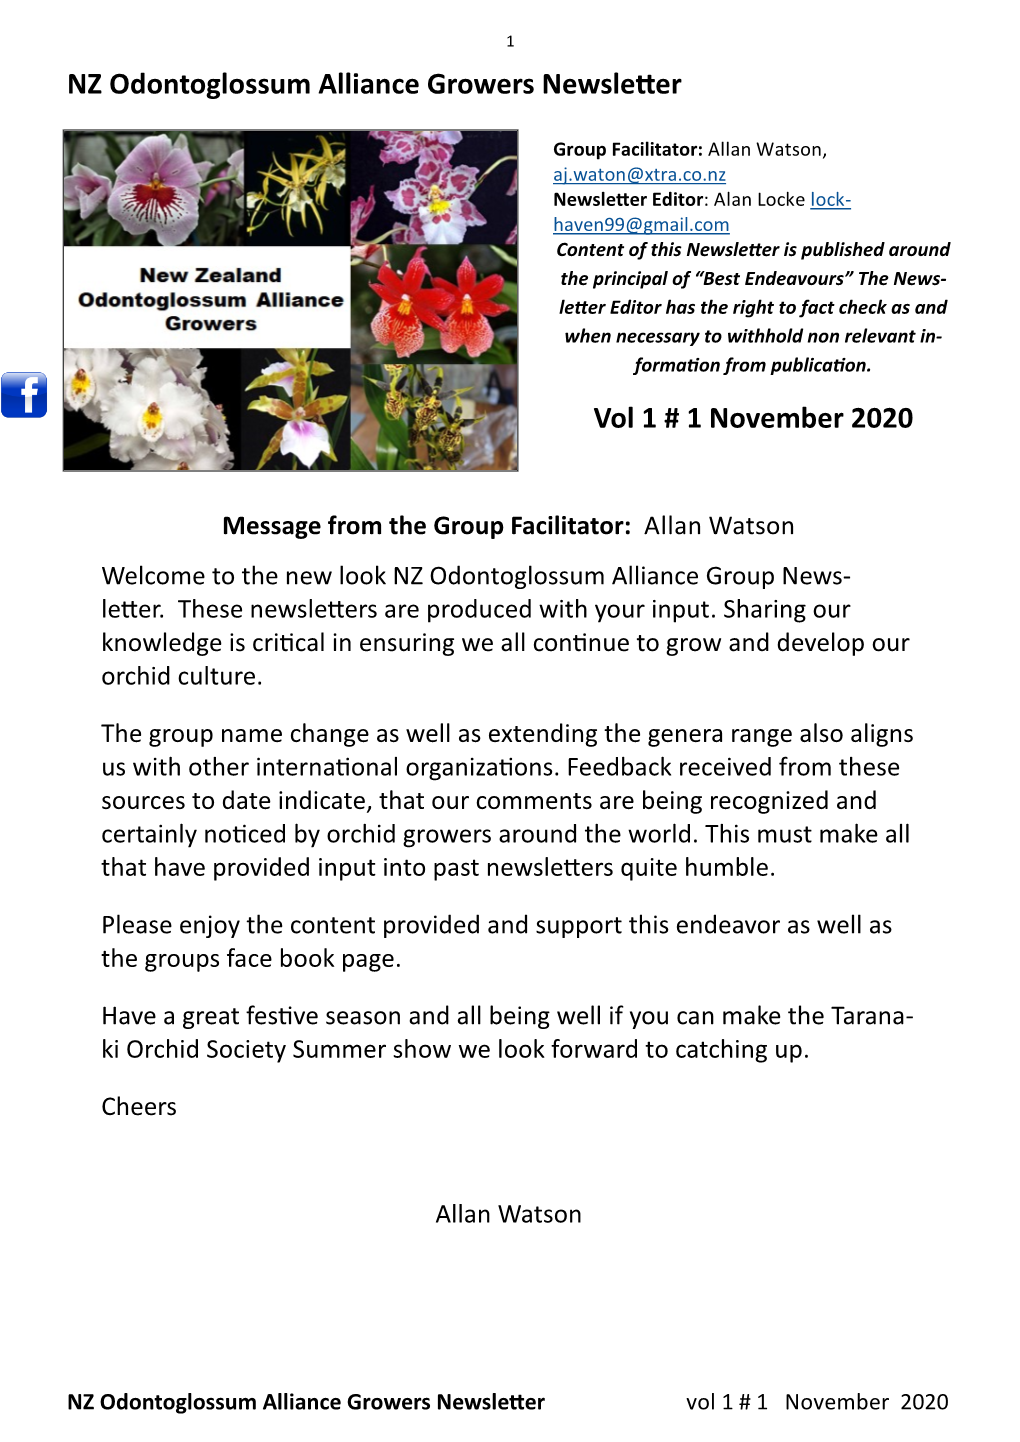 Vol 1 # 1 November 2020 NZ Odontoglossum Alliance Growers